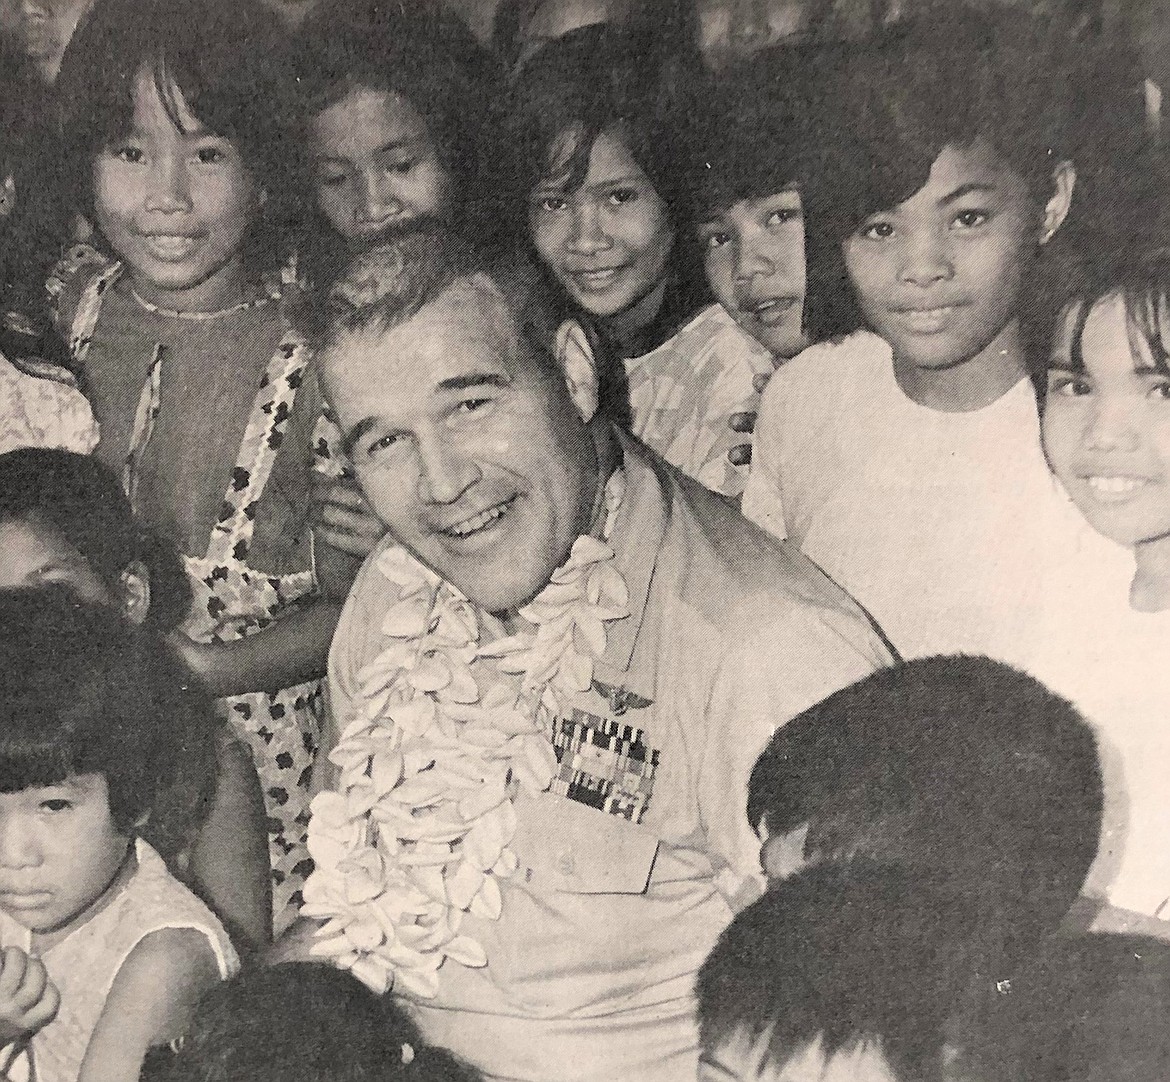 Captain H.P. Glindeman Jr. and Filipino third graders.